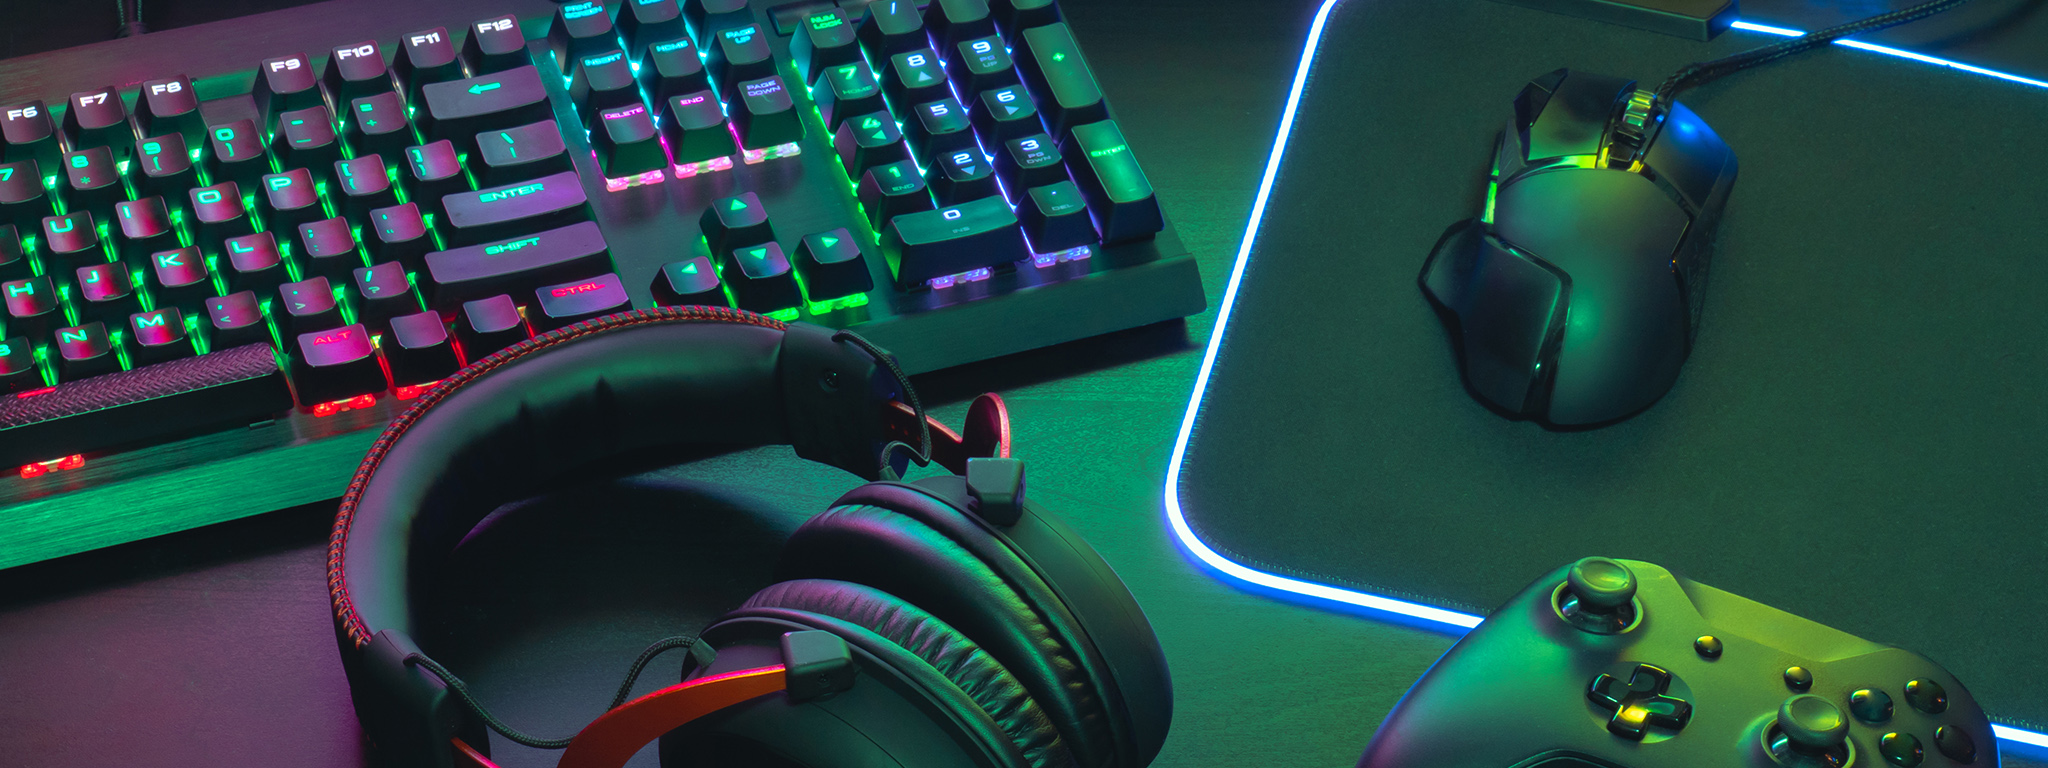 Робоче місце геймера, клавіатура з RGB-підсвітленням, ігрова гарнітура, ігрова миша та килимок для миші з RGB-підсвітленням, контролер Xbox